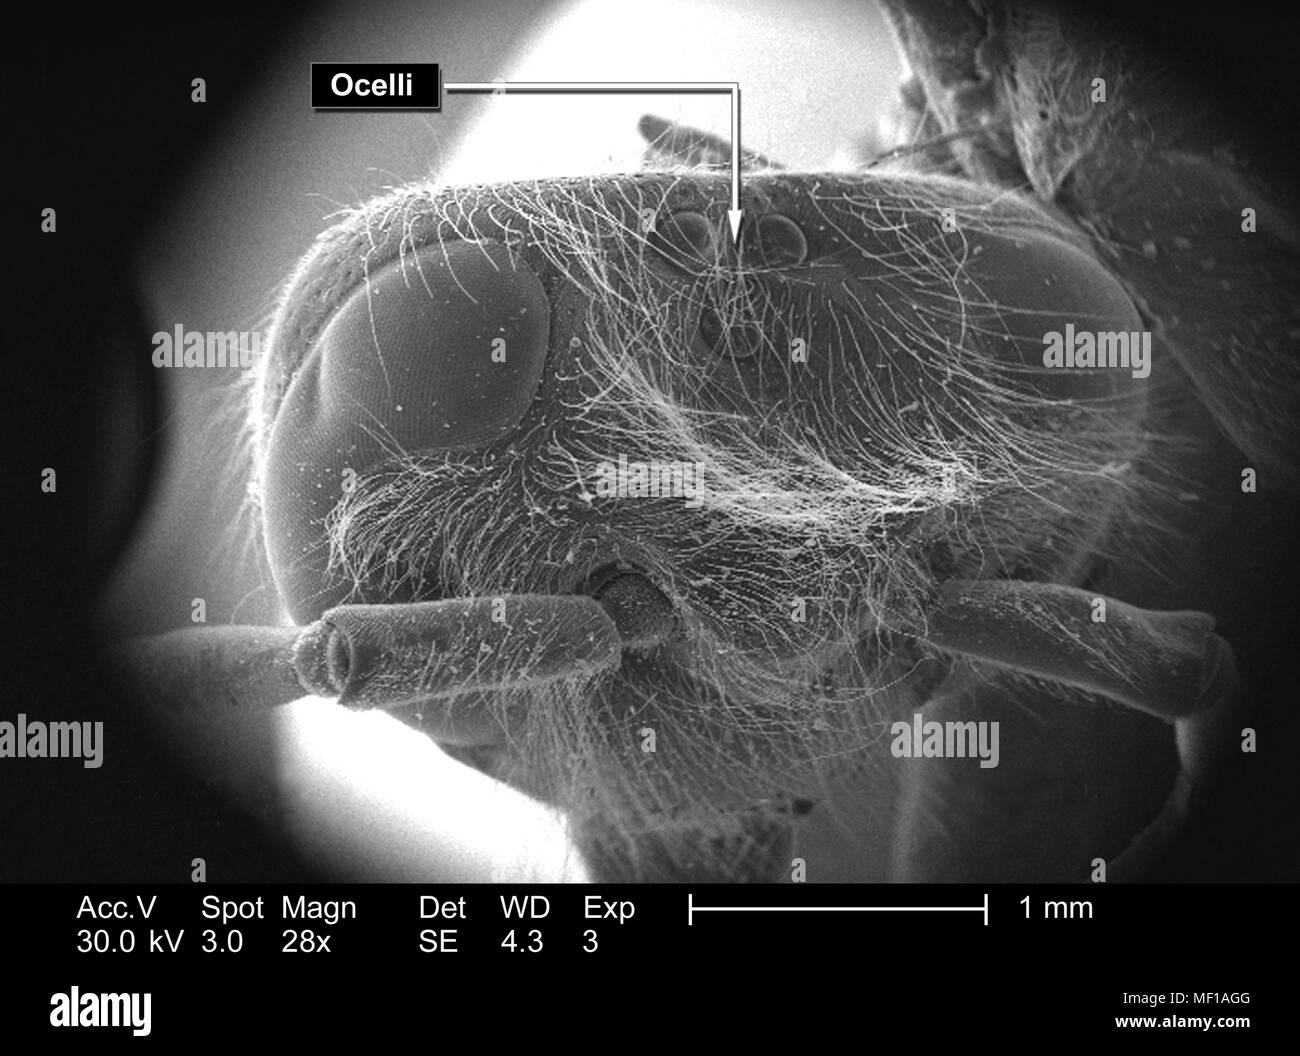 Alla regione della testa di un misterioso hymenopteran insetto, raffigurato in 28x di scansione ingrandita al microscopio elettronico (SEM) immagine, 2005. Immagine cortesia di centri per il controllo delle malattie (CDC) / Janice Haney Carr. () Foto Stock